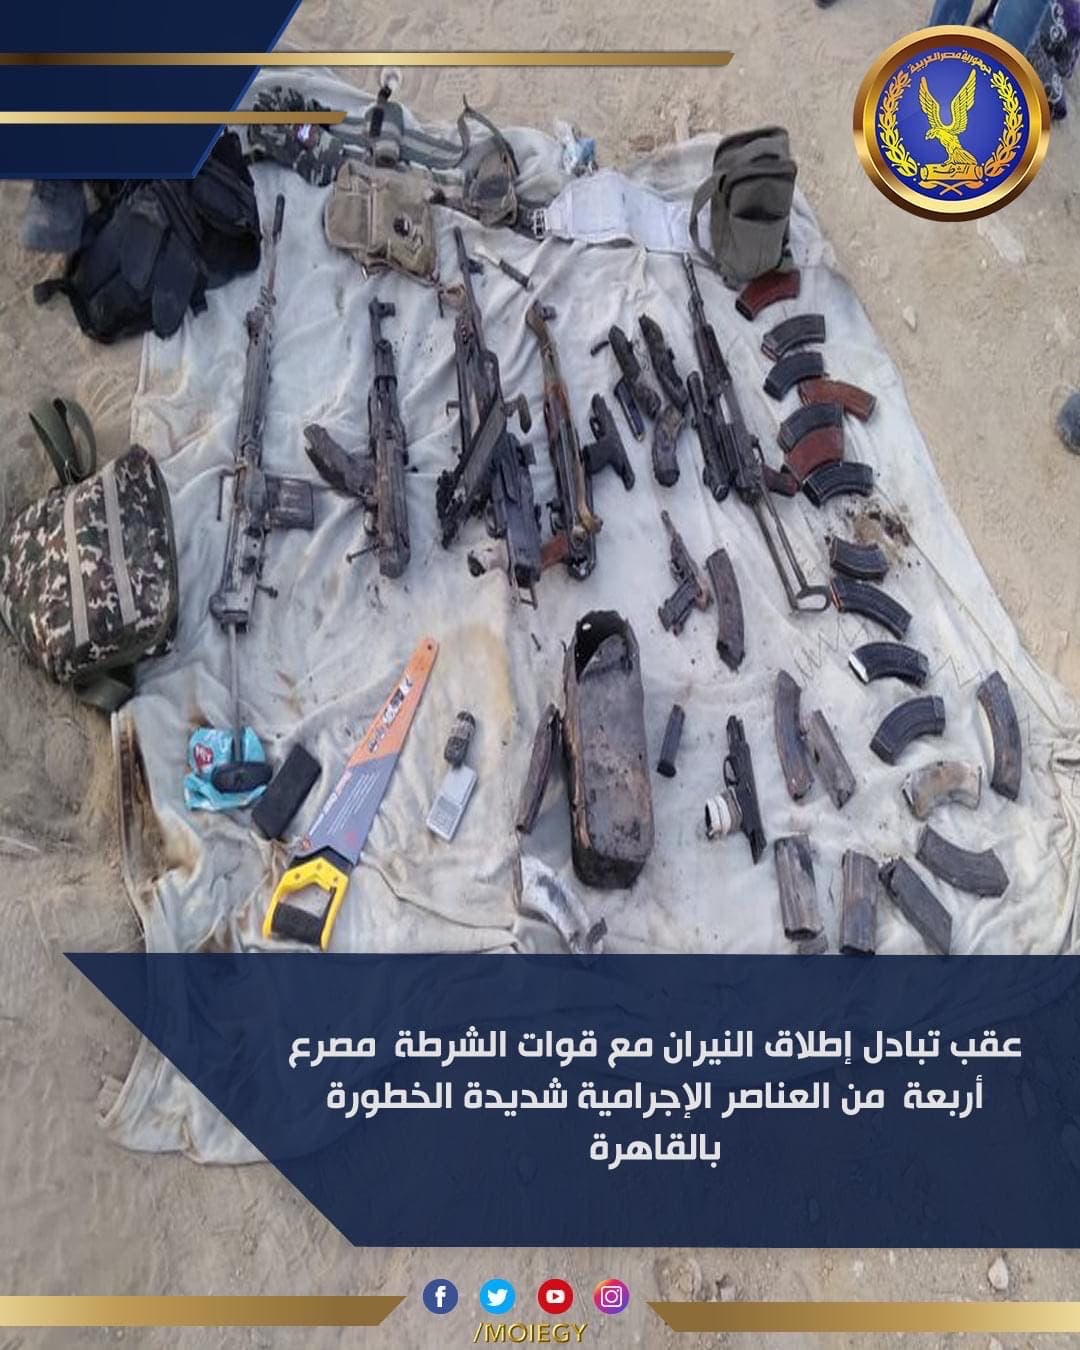 صور من الأسلحة التي تم ضبطها 